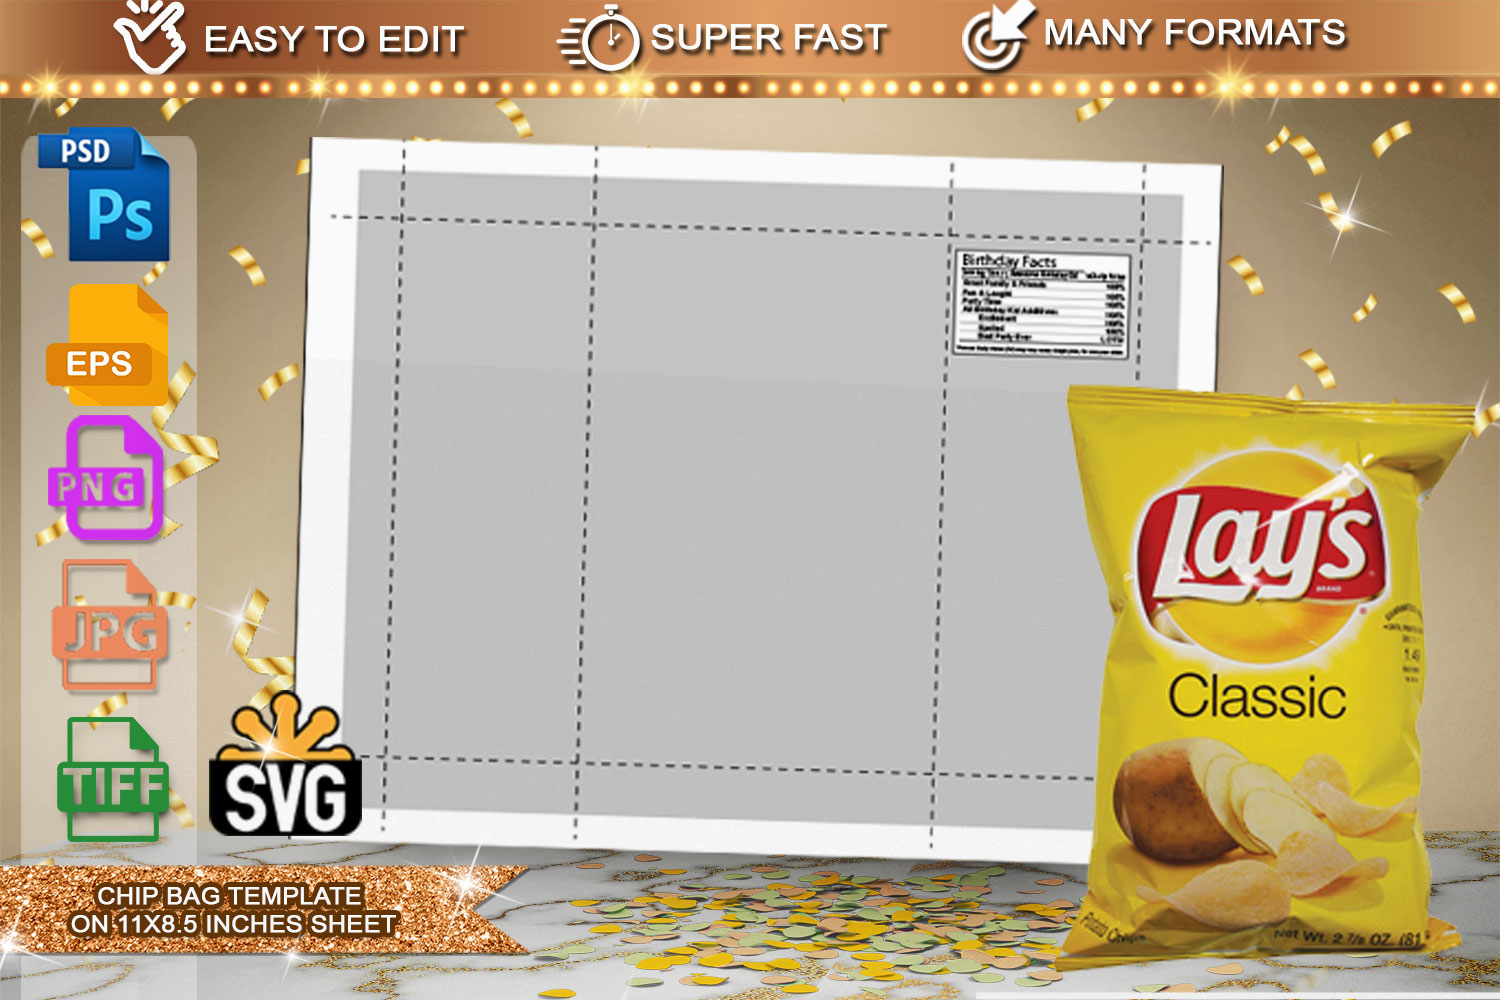 Free Chip Bag Template FREE PRINTABLE POTATO CHIP BAG TEMPLATE